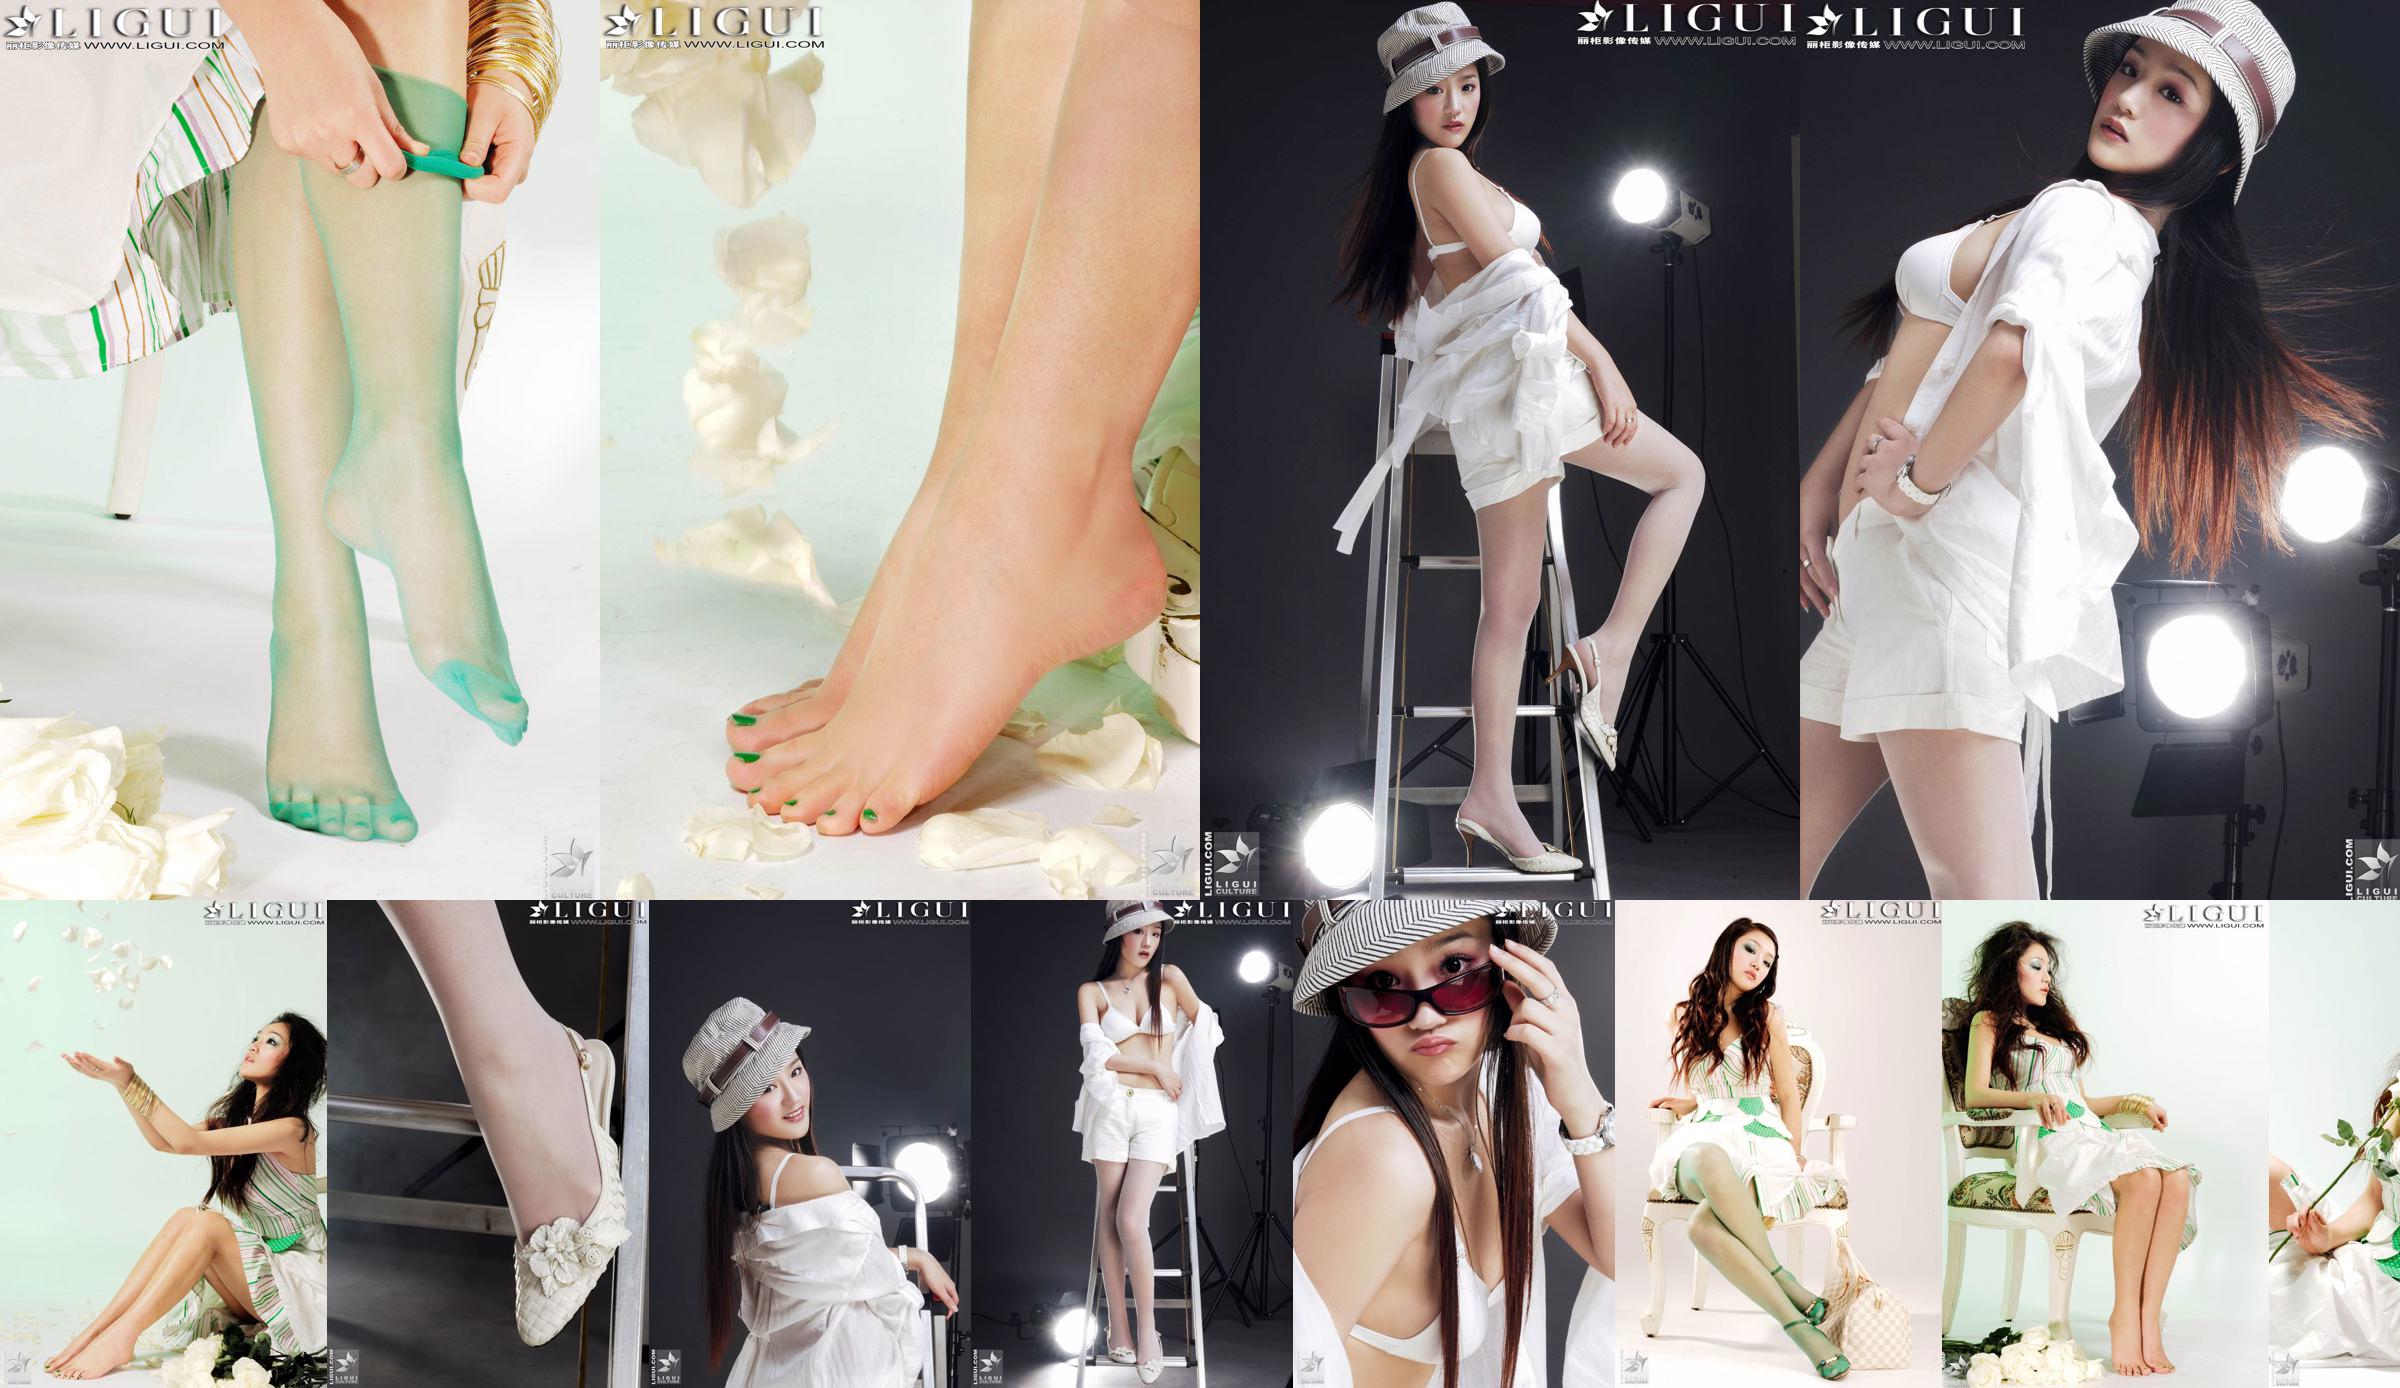 [丽 柜 贵 Fuß LiGui] Model Zhang Jingyans "Modischer Fuß" -Foto von schönen Beinen und Seidenfüßen No.f5c7b9 Seite 7